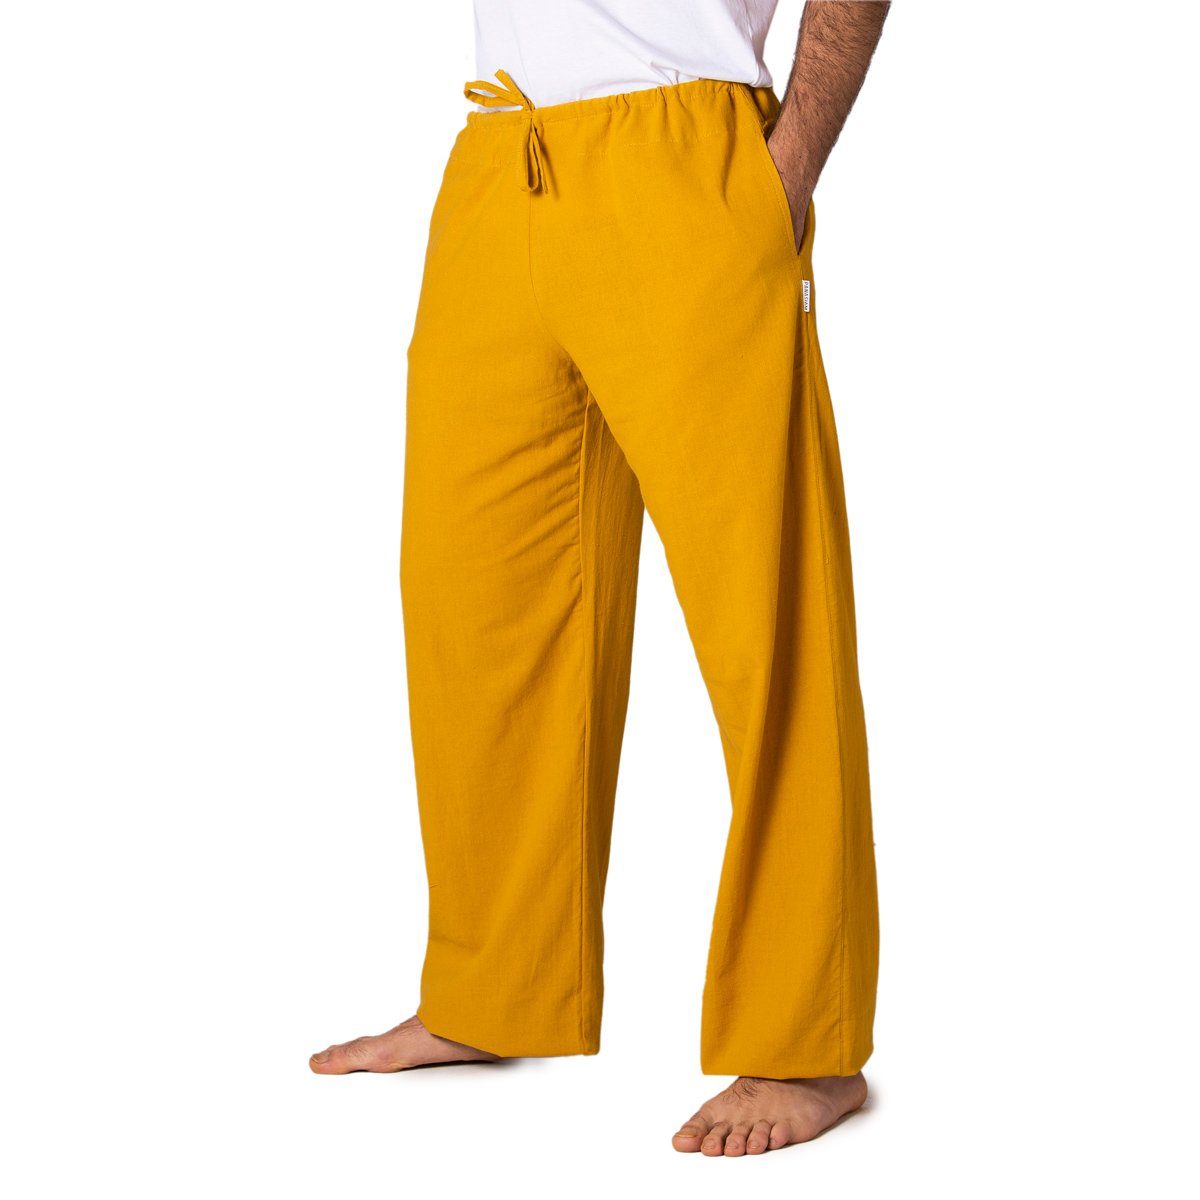 PANASIAM Wellnesshose Bequeme Unisex Stoffhose aus feiner Baumwolle für Damen und Herren Freizeithose mit Taschen Relaxhose in großer Farbauswahl Gelb